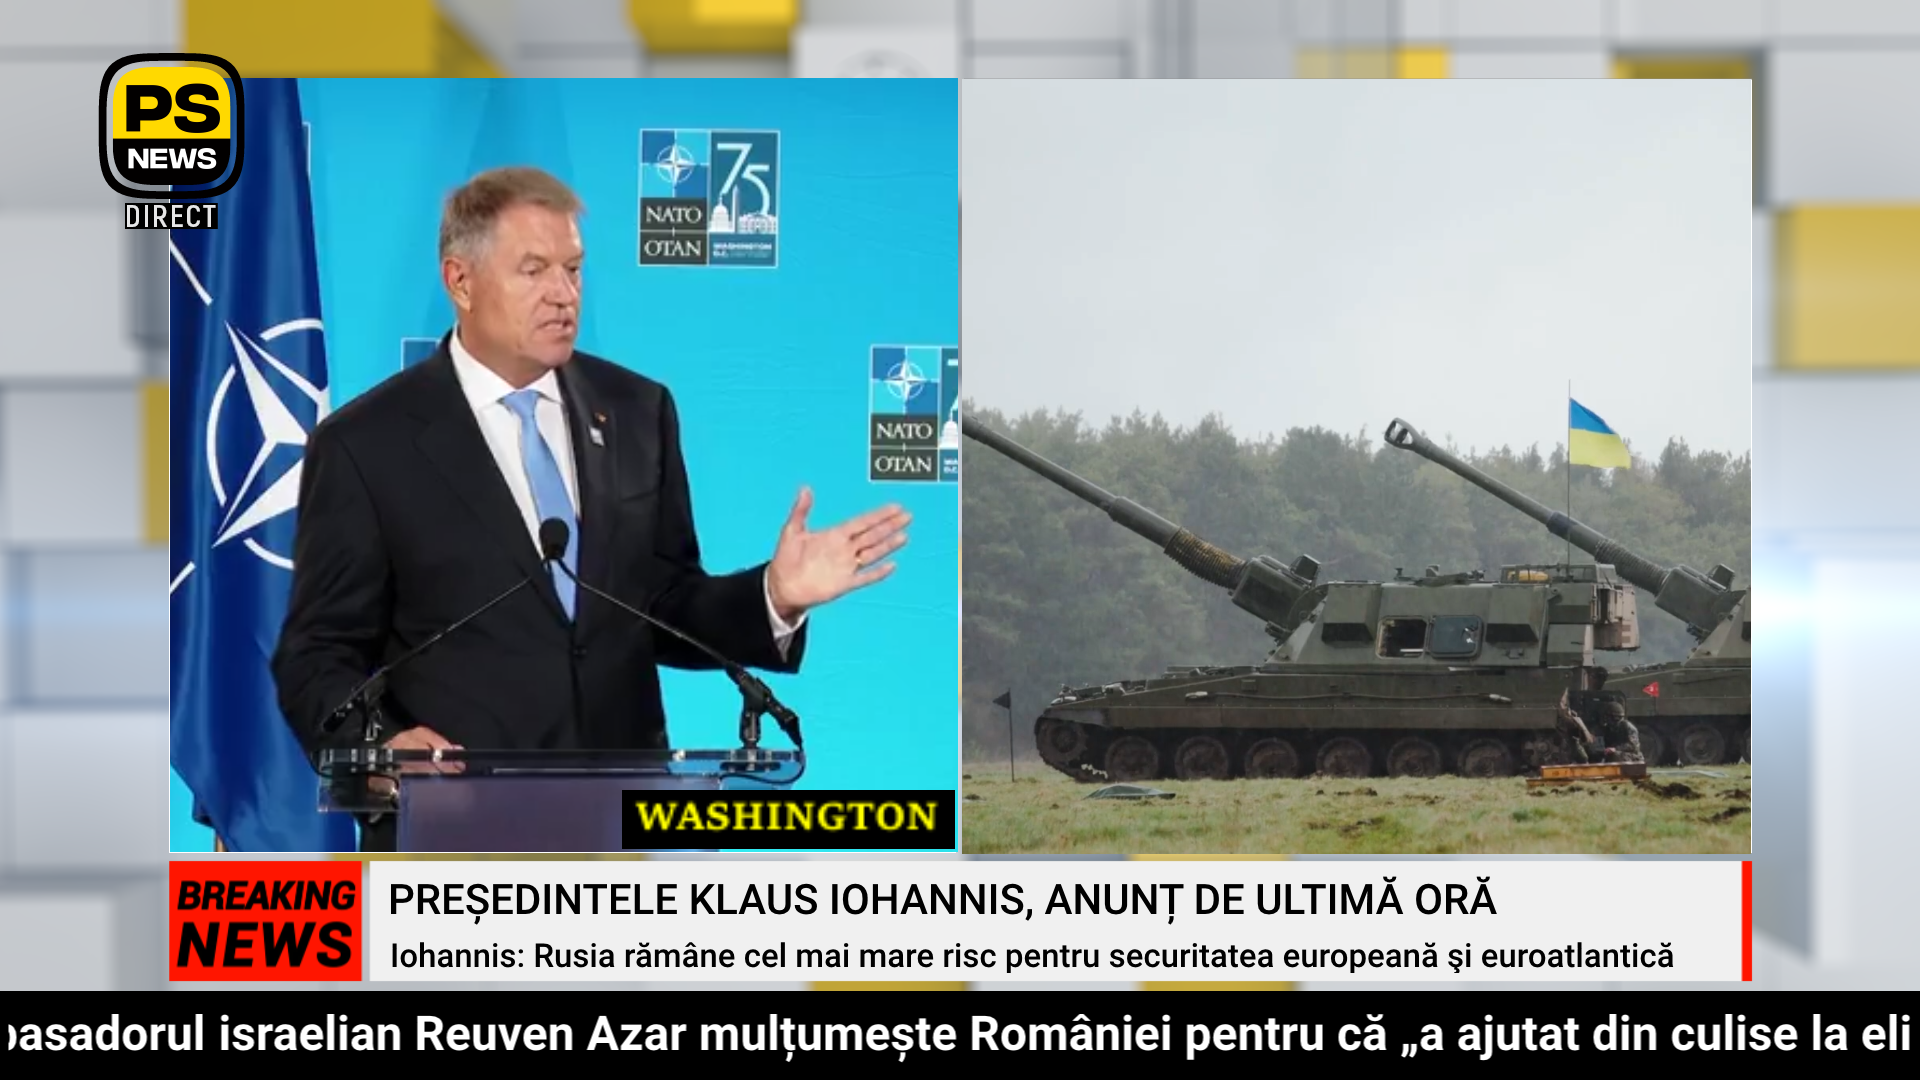 PS News TV | Washington | Președintele Klaus Iohannis, anunț de ultimă oră